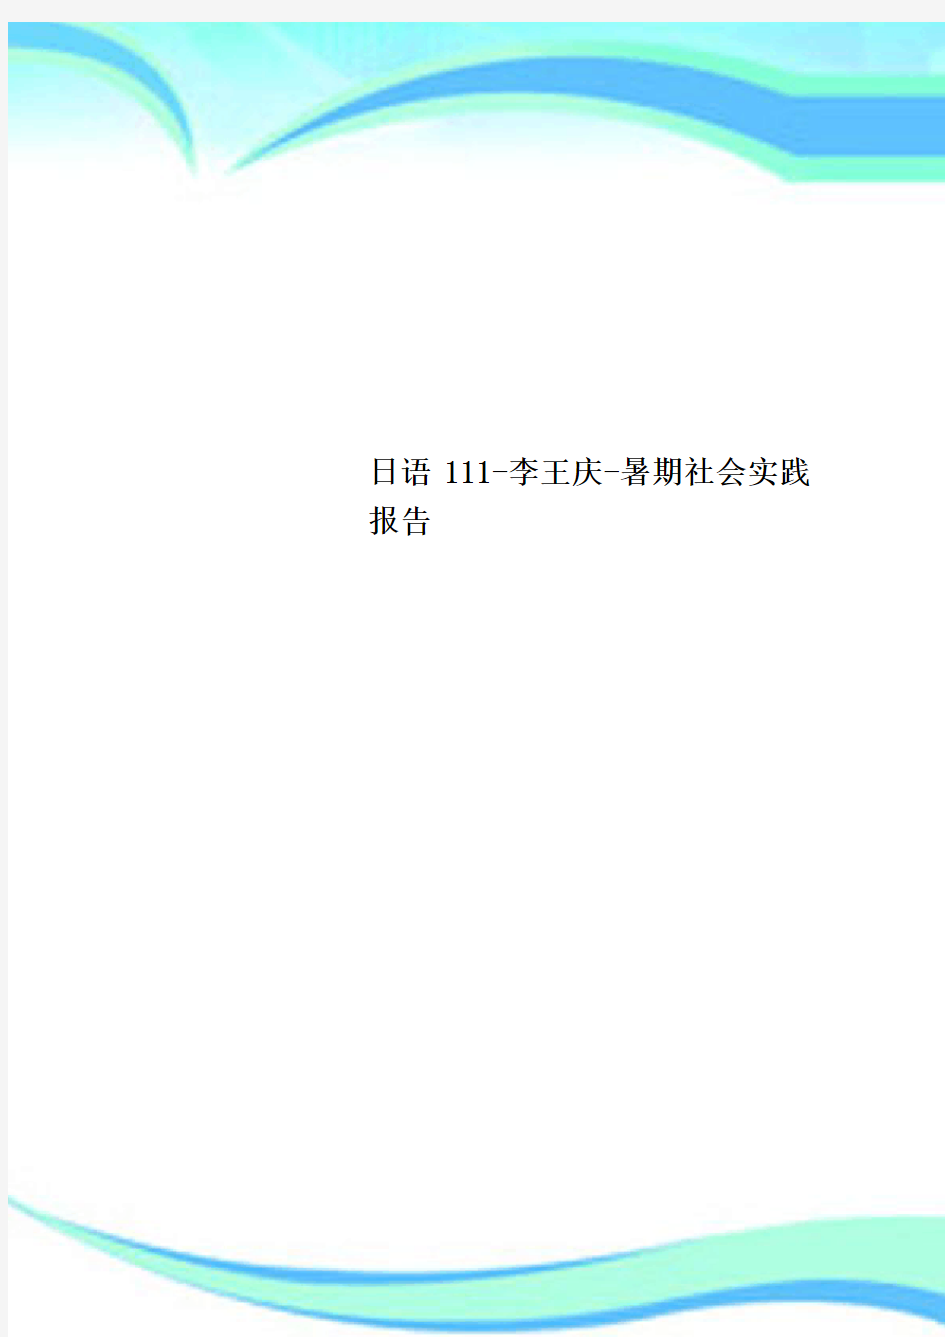 日语-李王庆-暑期社会实践分析报告